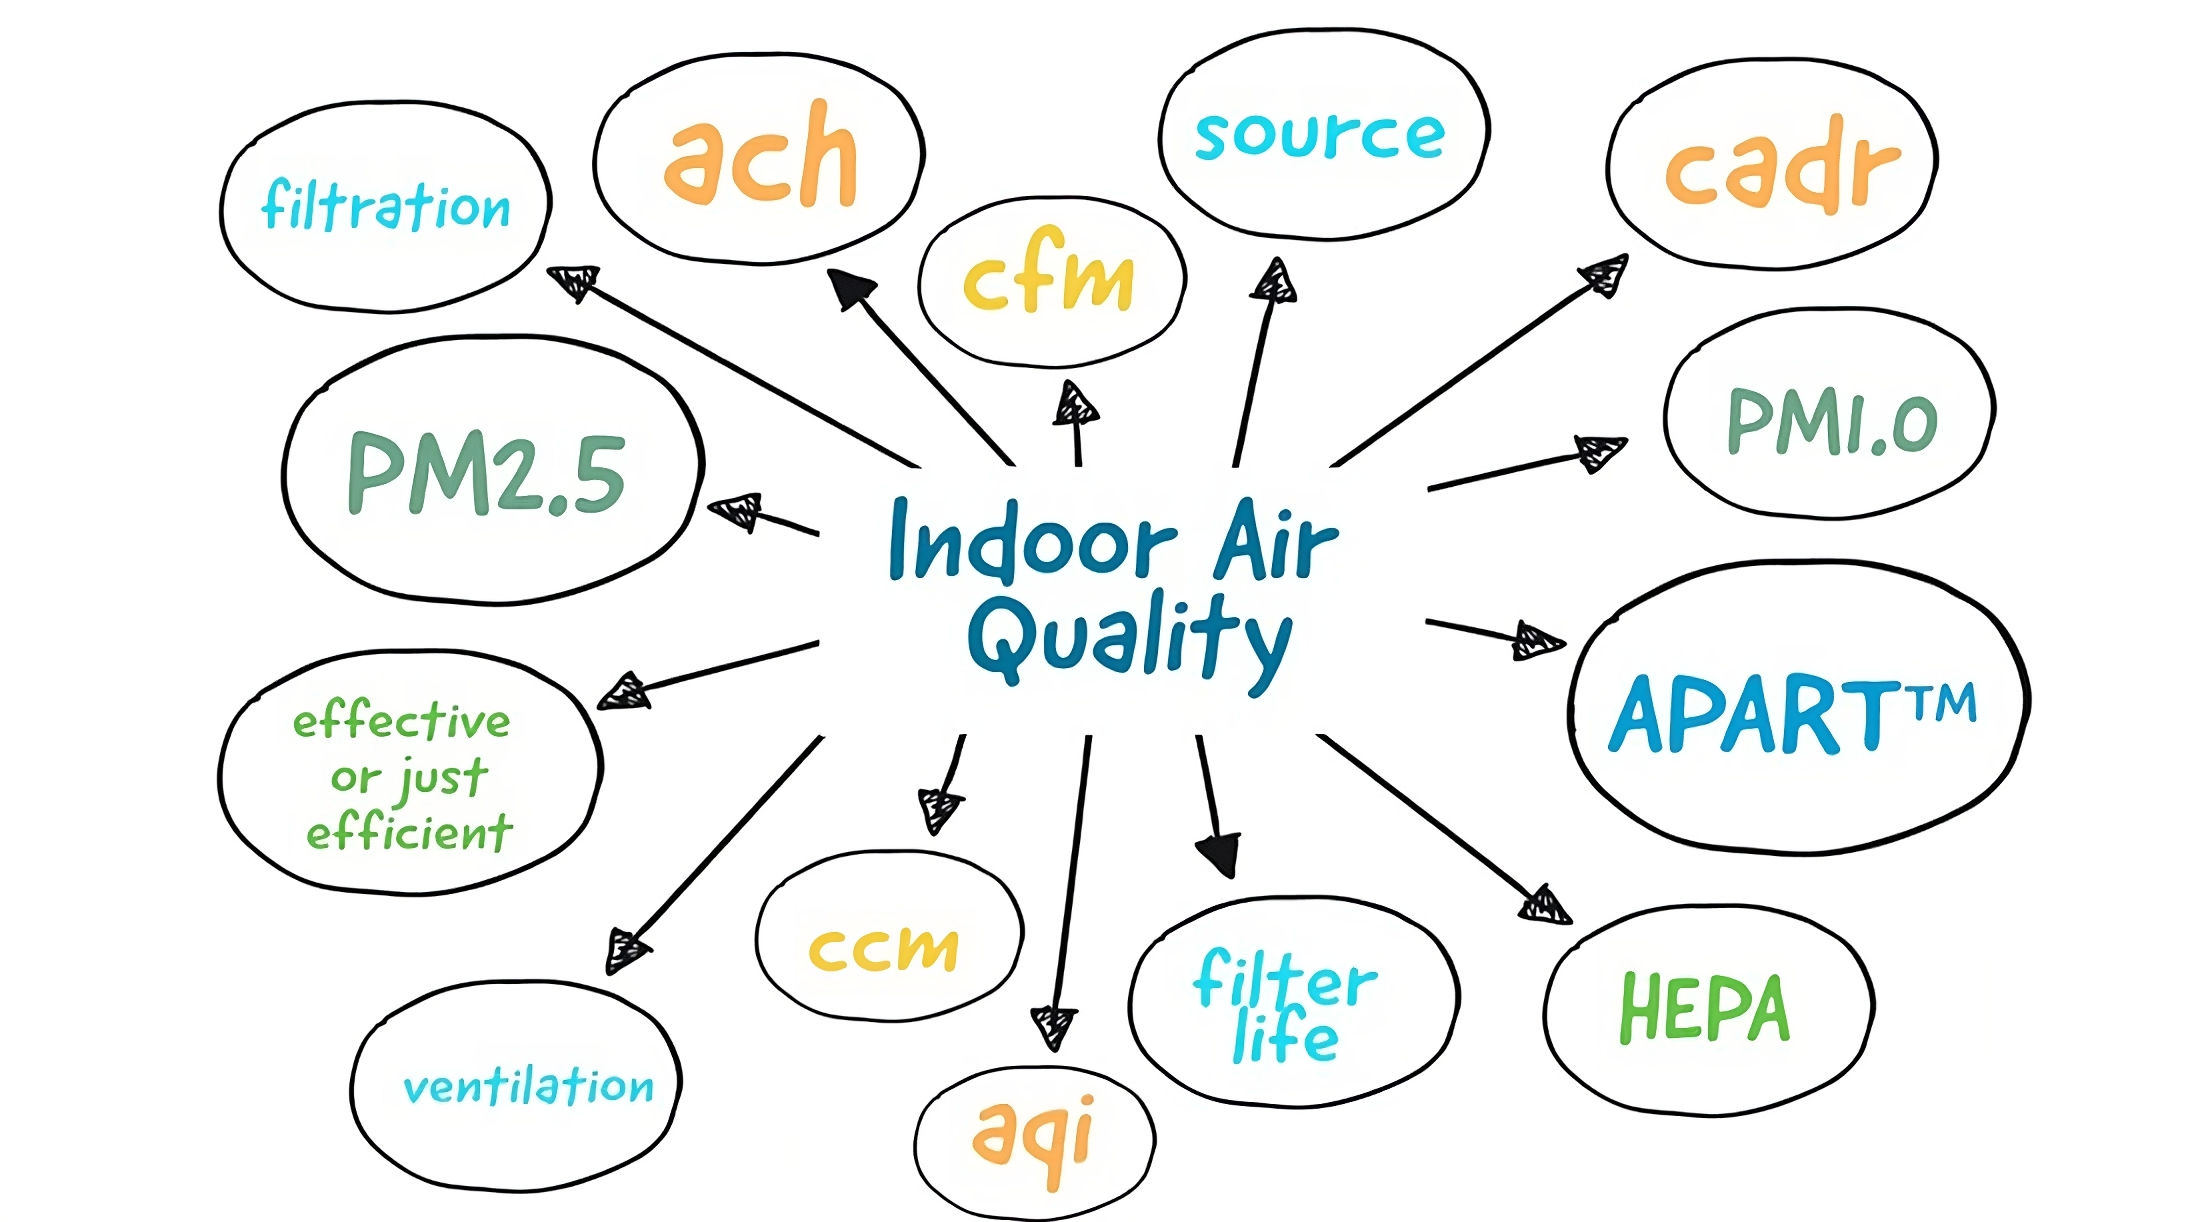 Understanding Indoor Air Quality Terminology